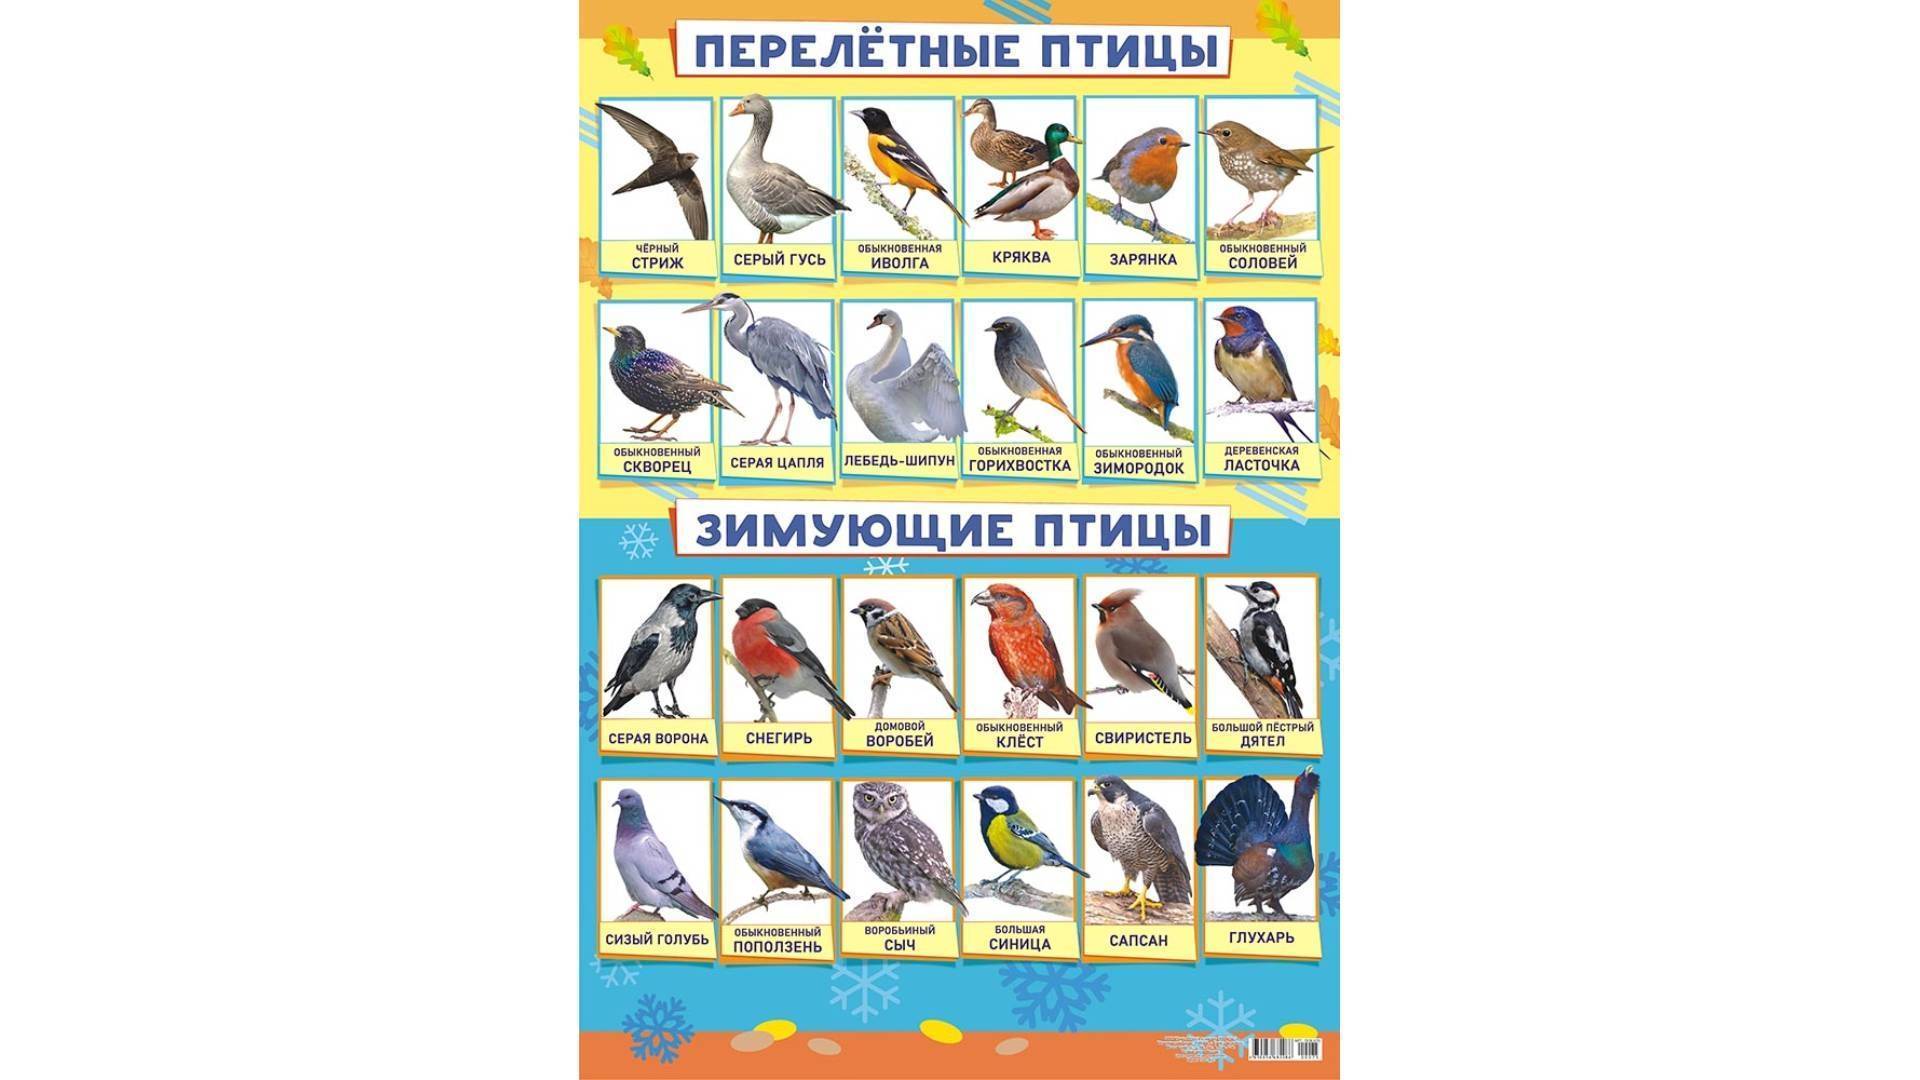 Перелётные птицы. описания, виды, и названия перелётных птиц